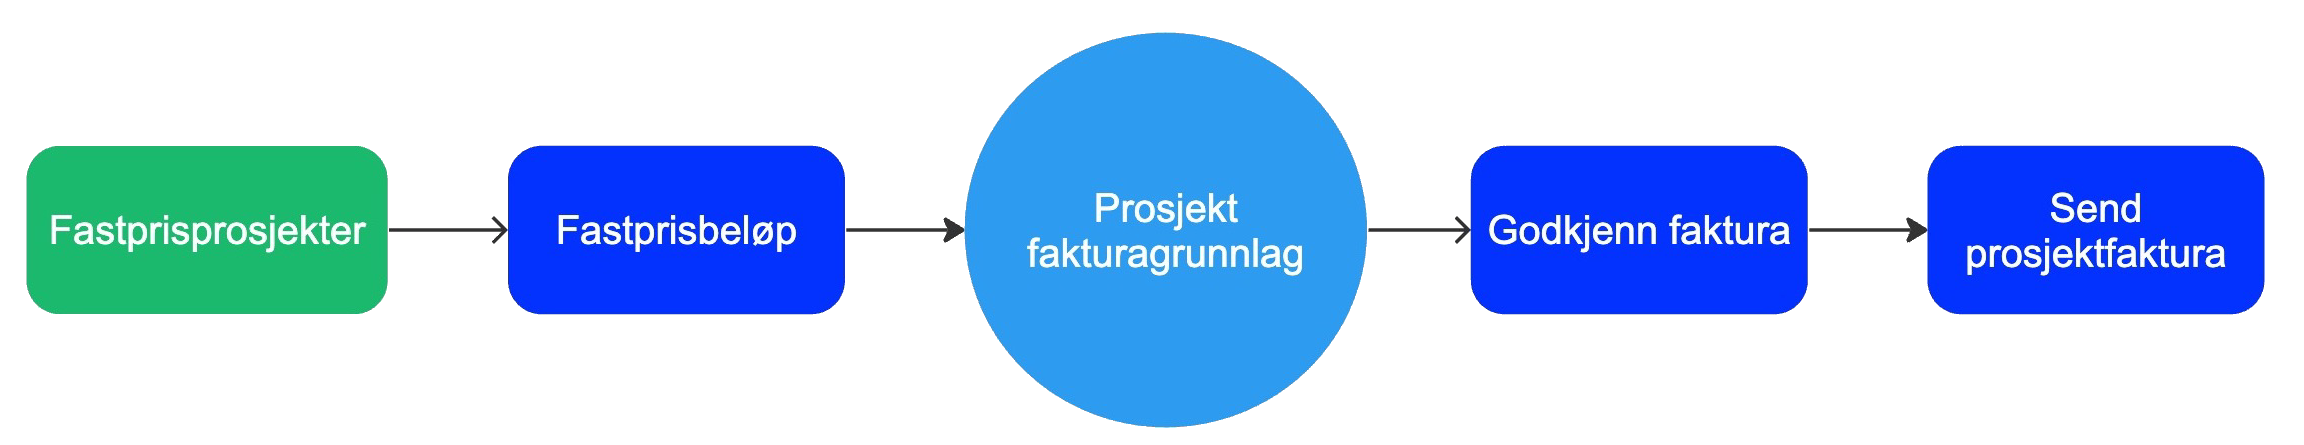 Flytdiagram_for_prosjekt_-_del_2.png